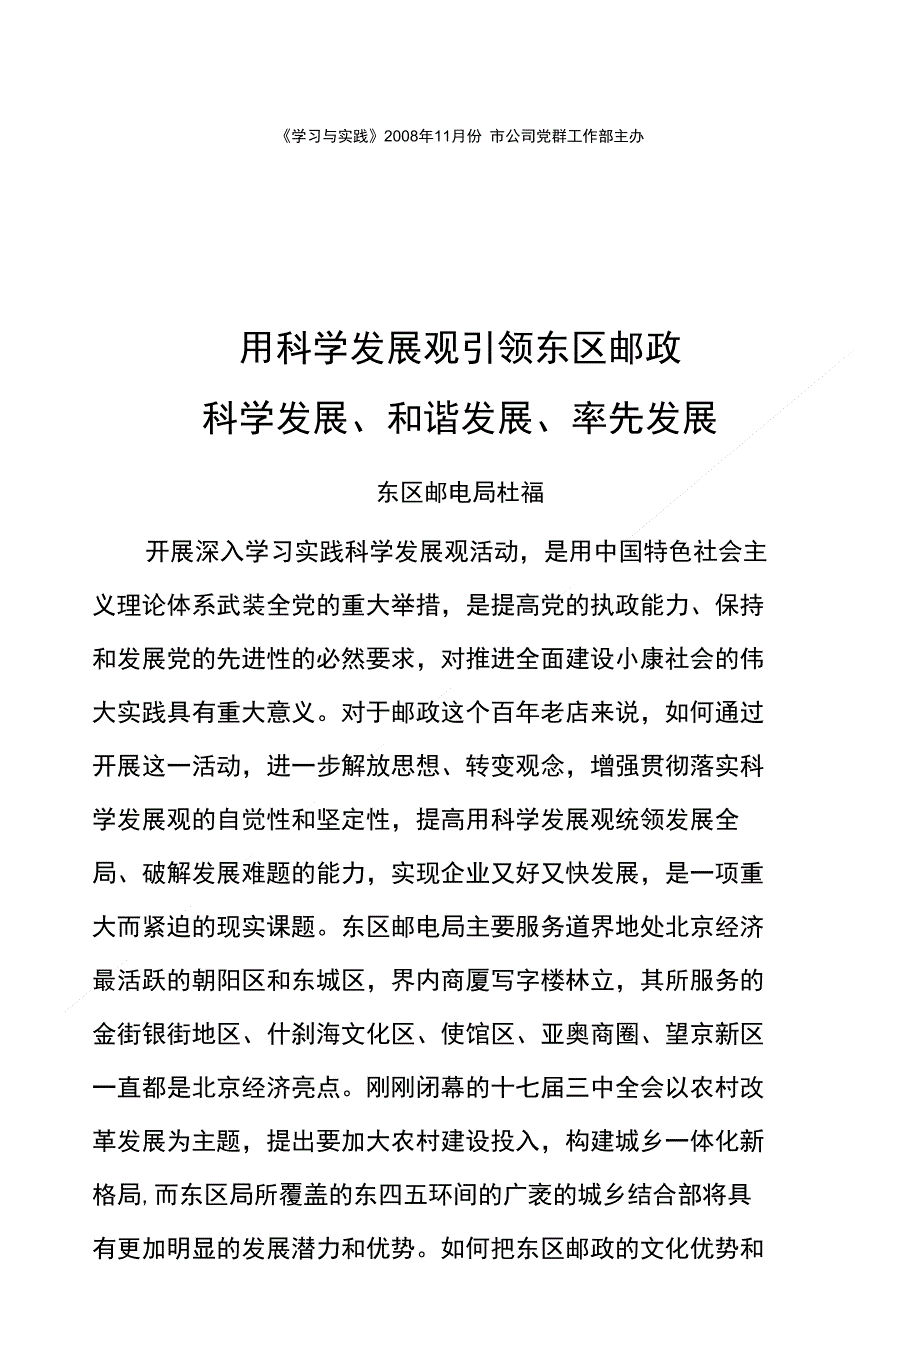 深入学习实践科学发展观 - 北京邮政党建网_第1页